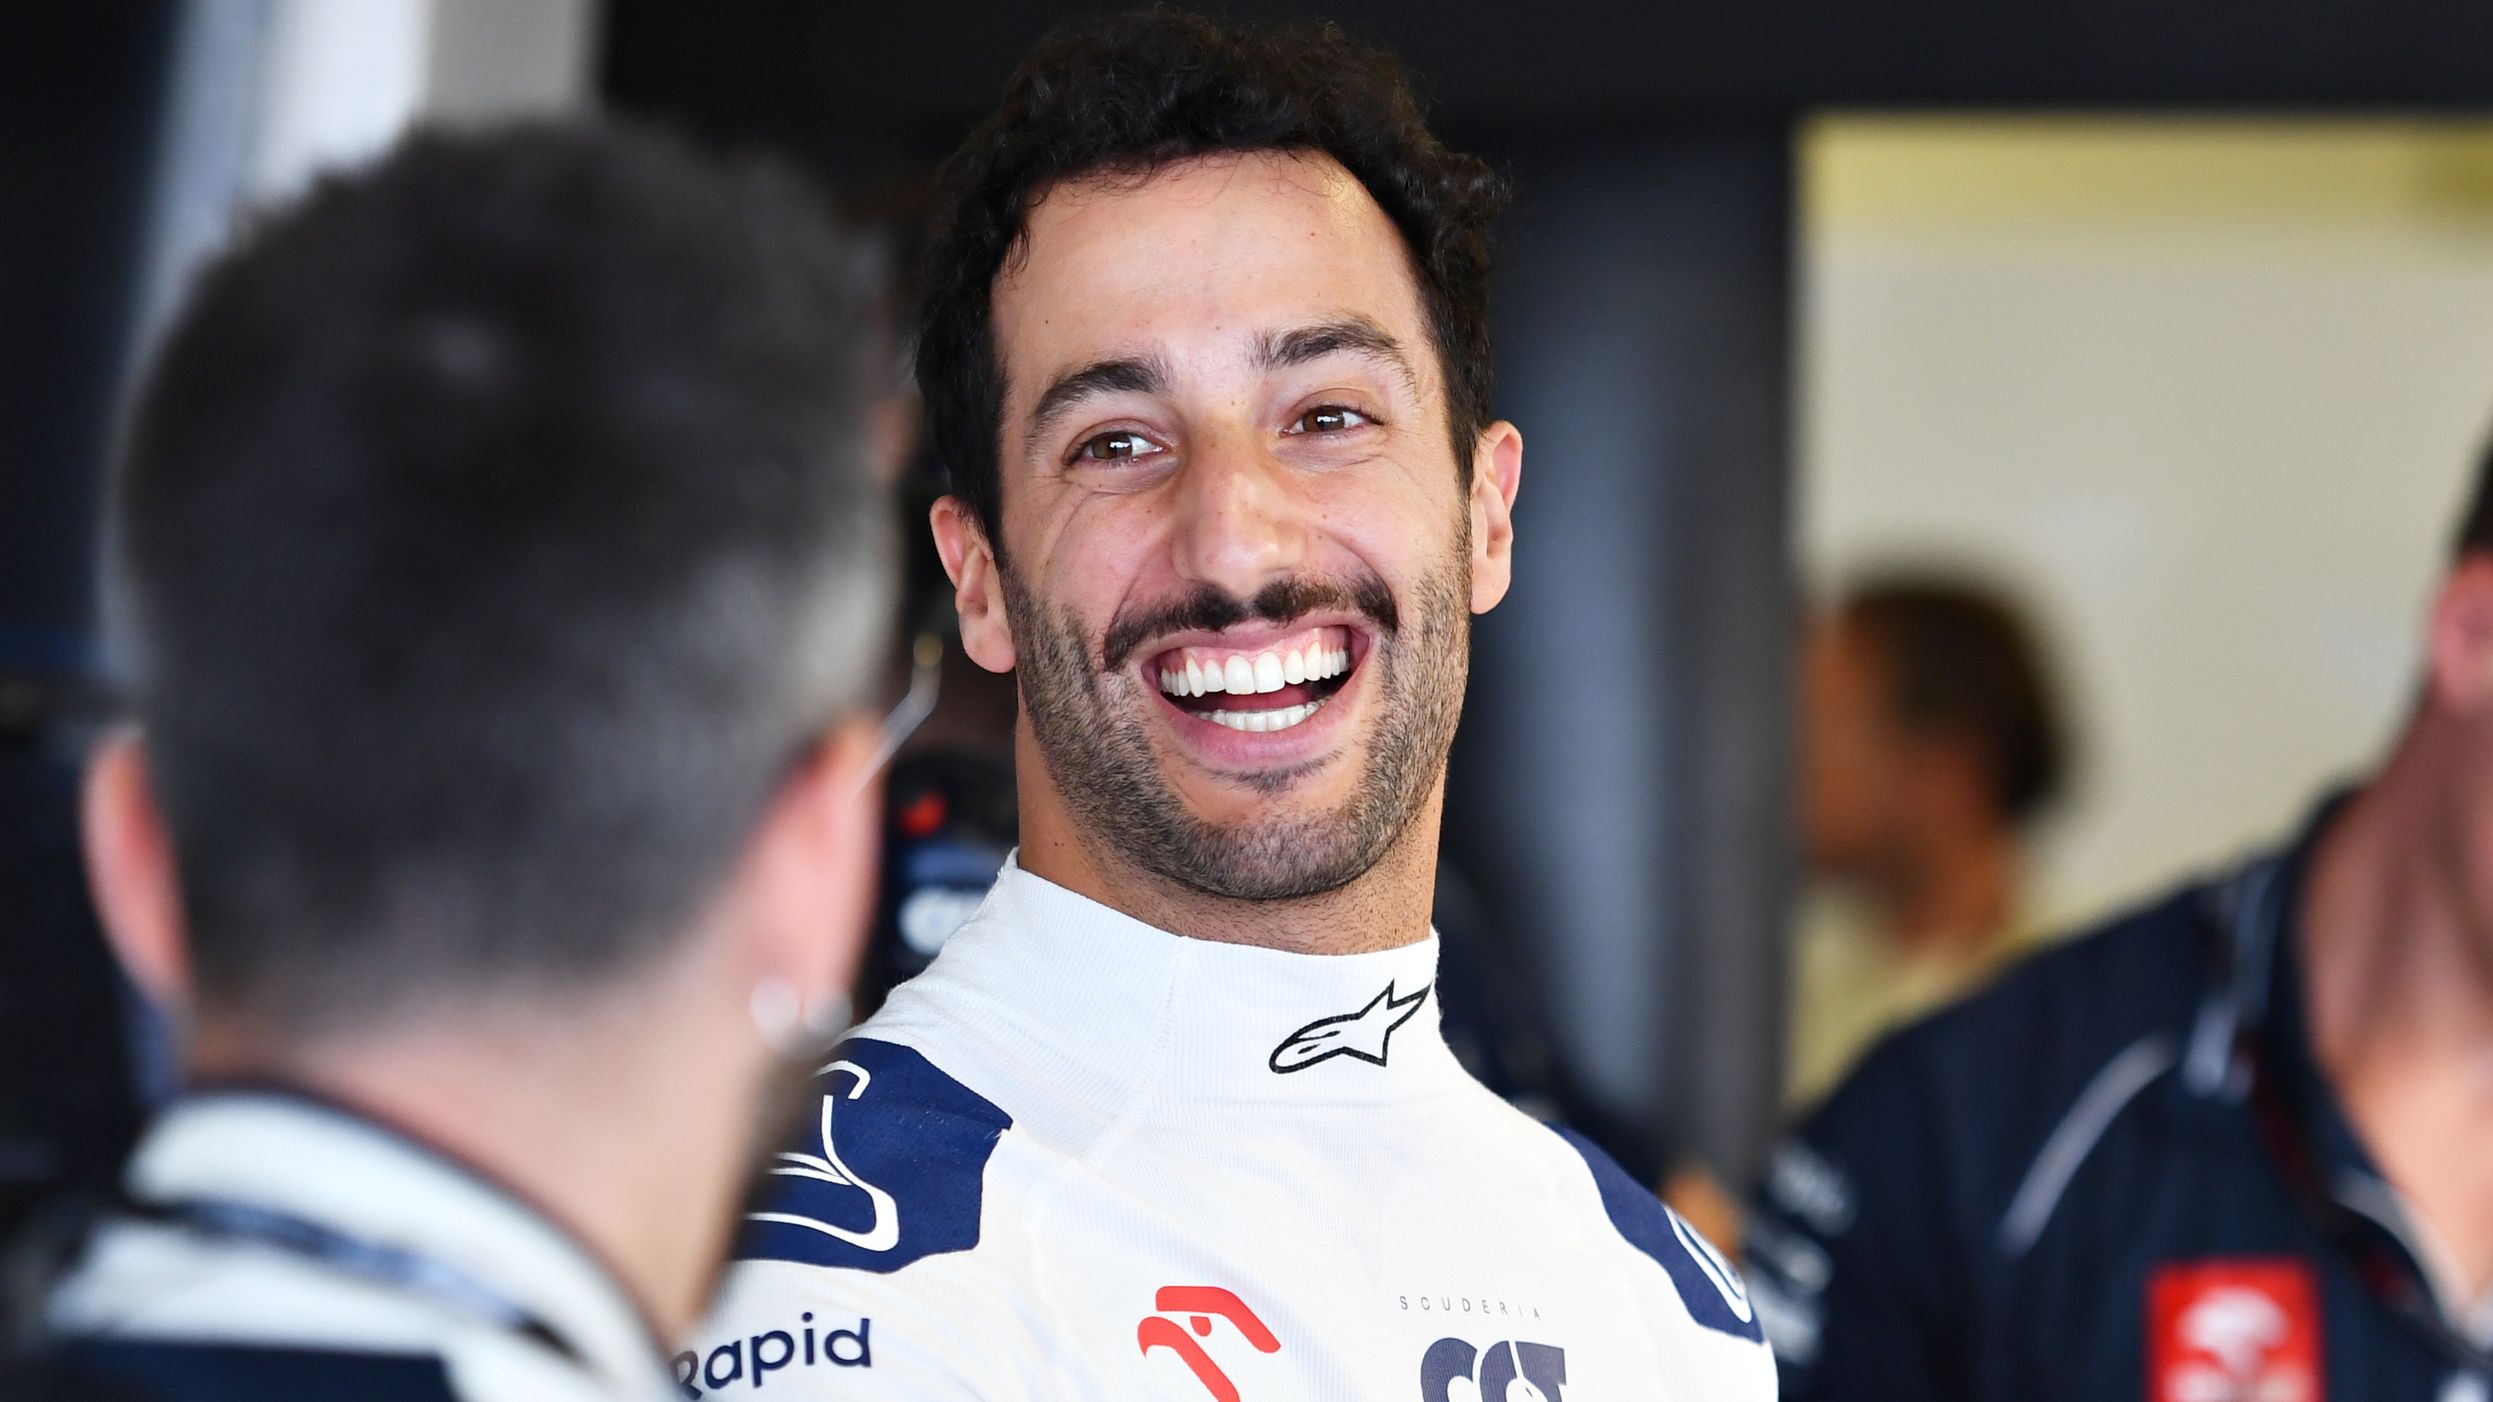 Daniel Ricciardo finished sixth in the Mexico City Grand Prix for AlphaTauri.